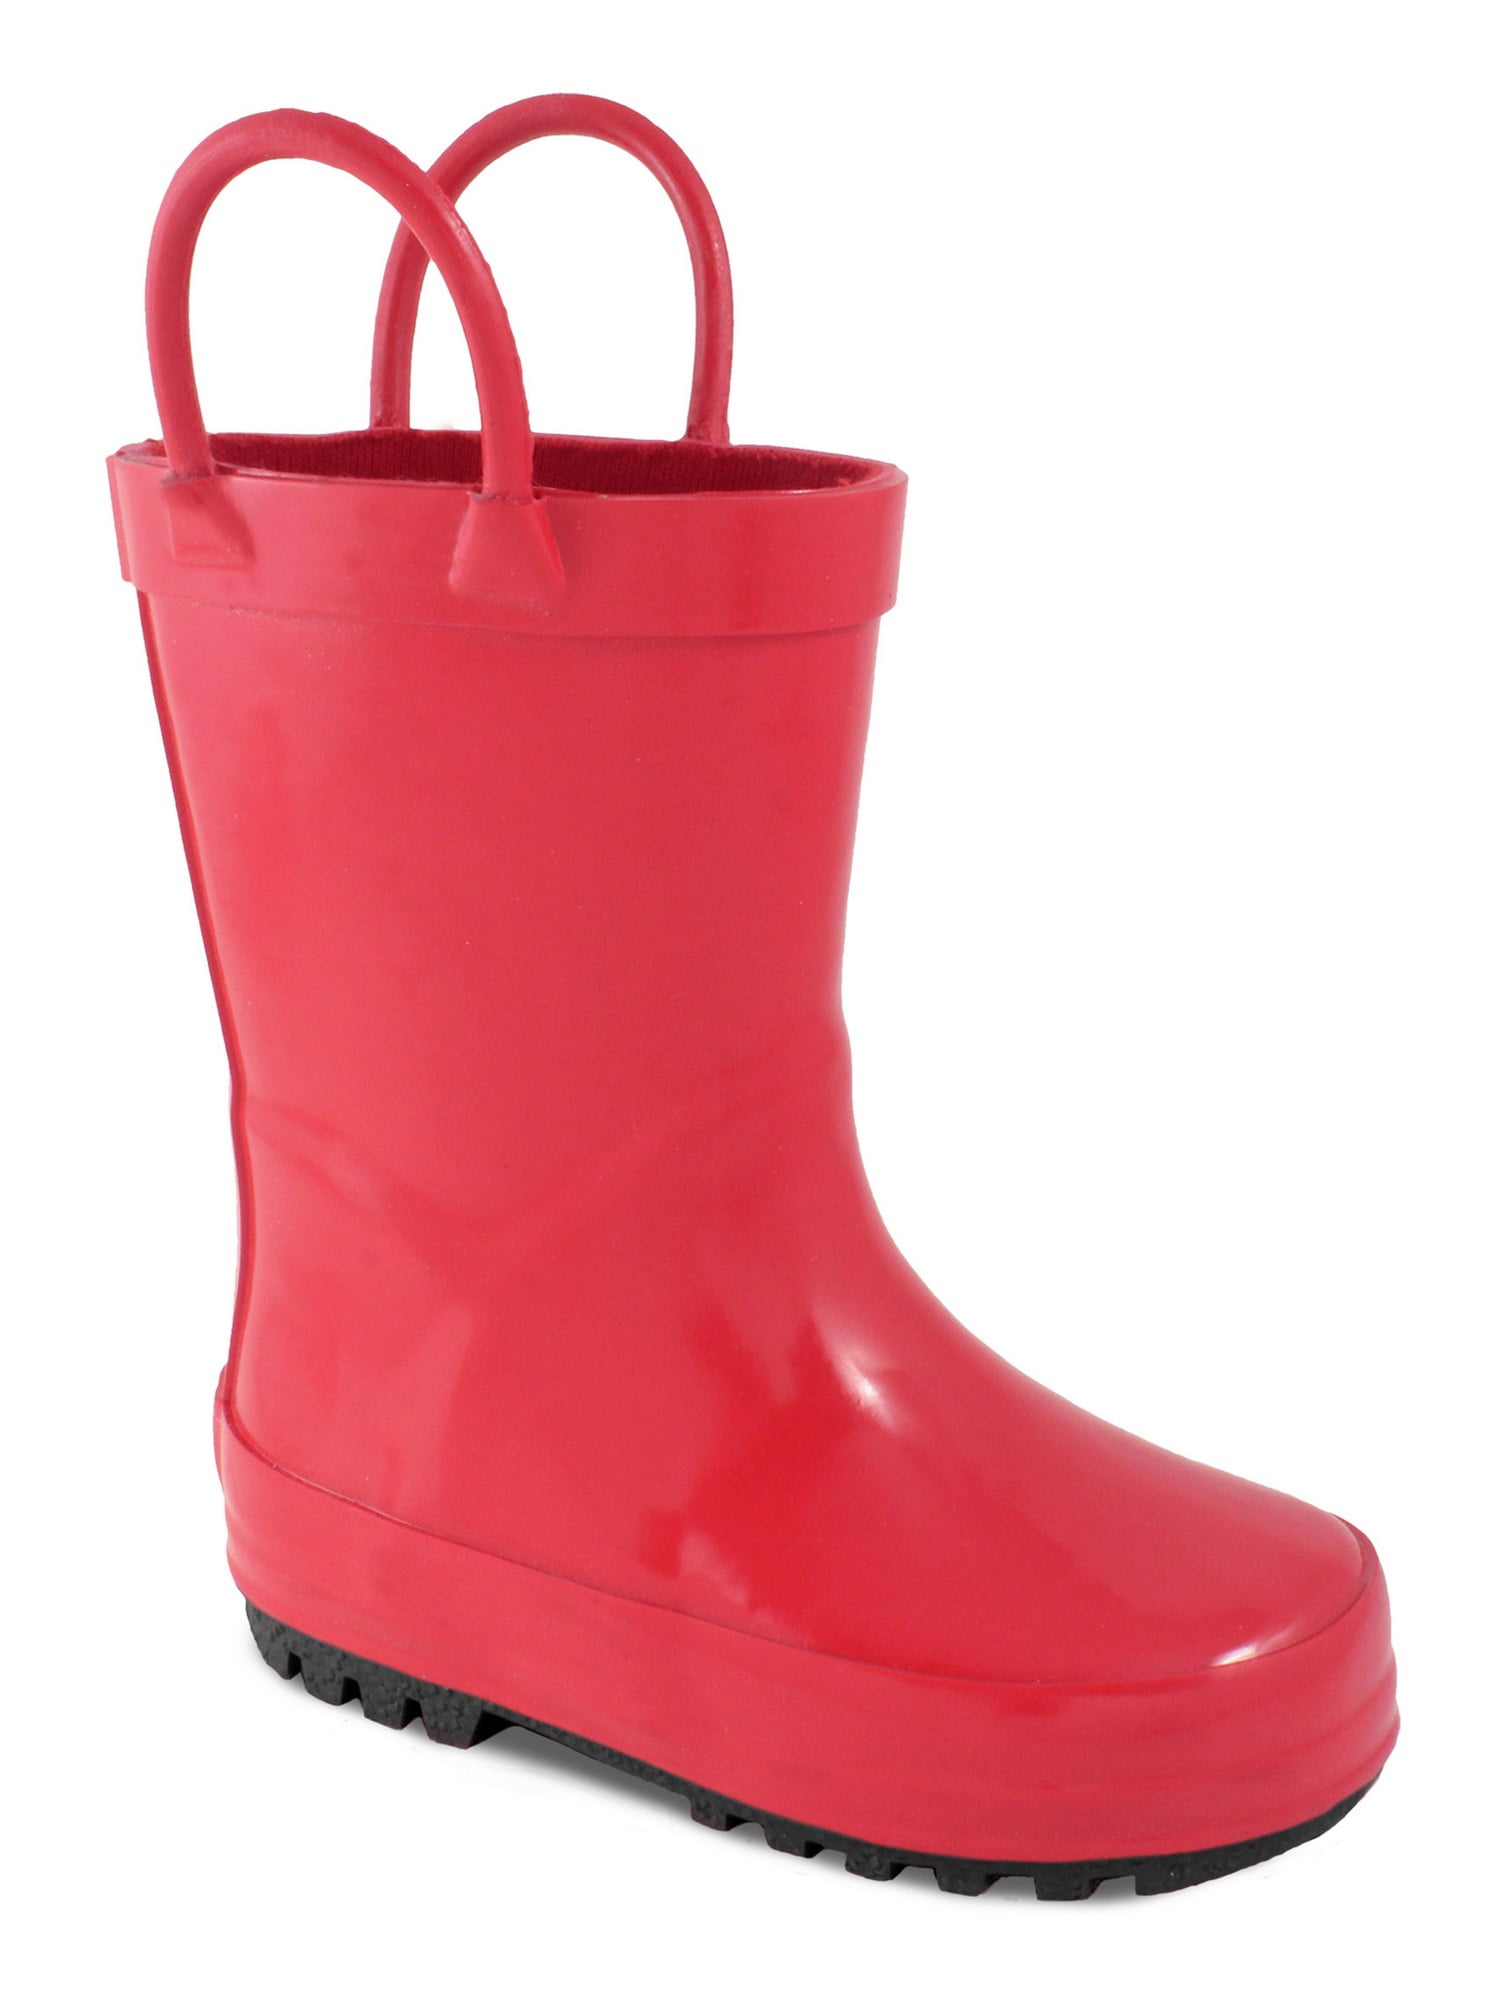 Baby Deer Little Girls Red Rubber First Steps Rain Boots - Walmart.com ...